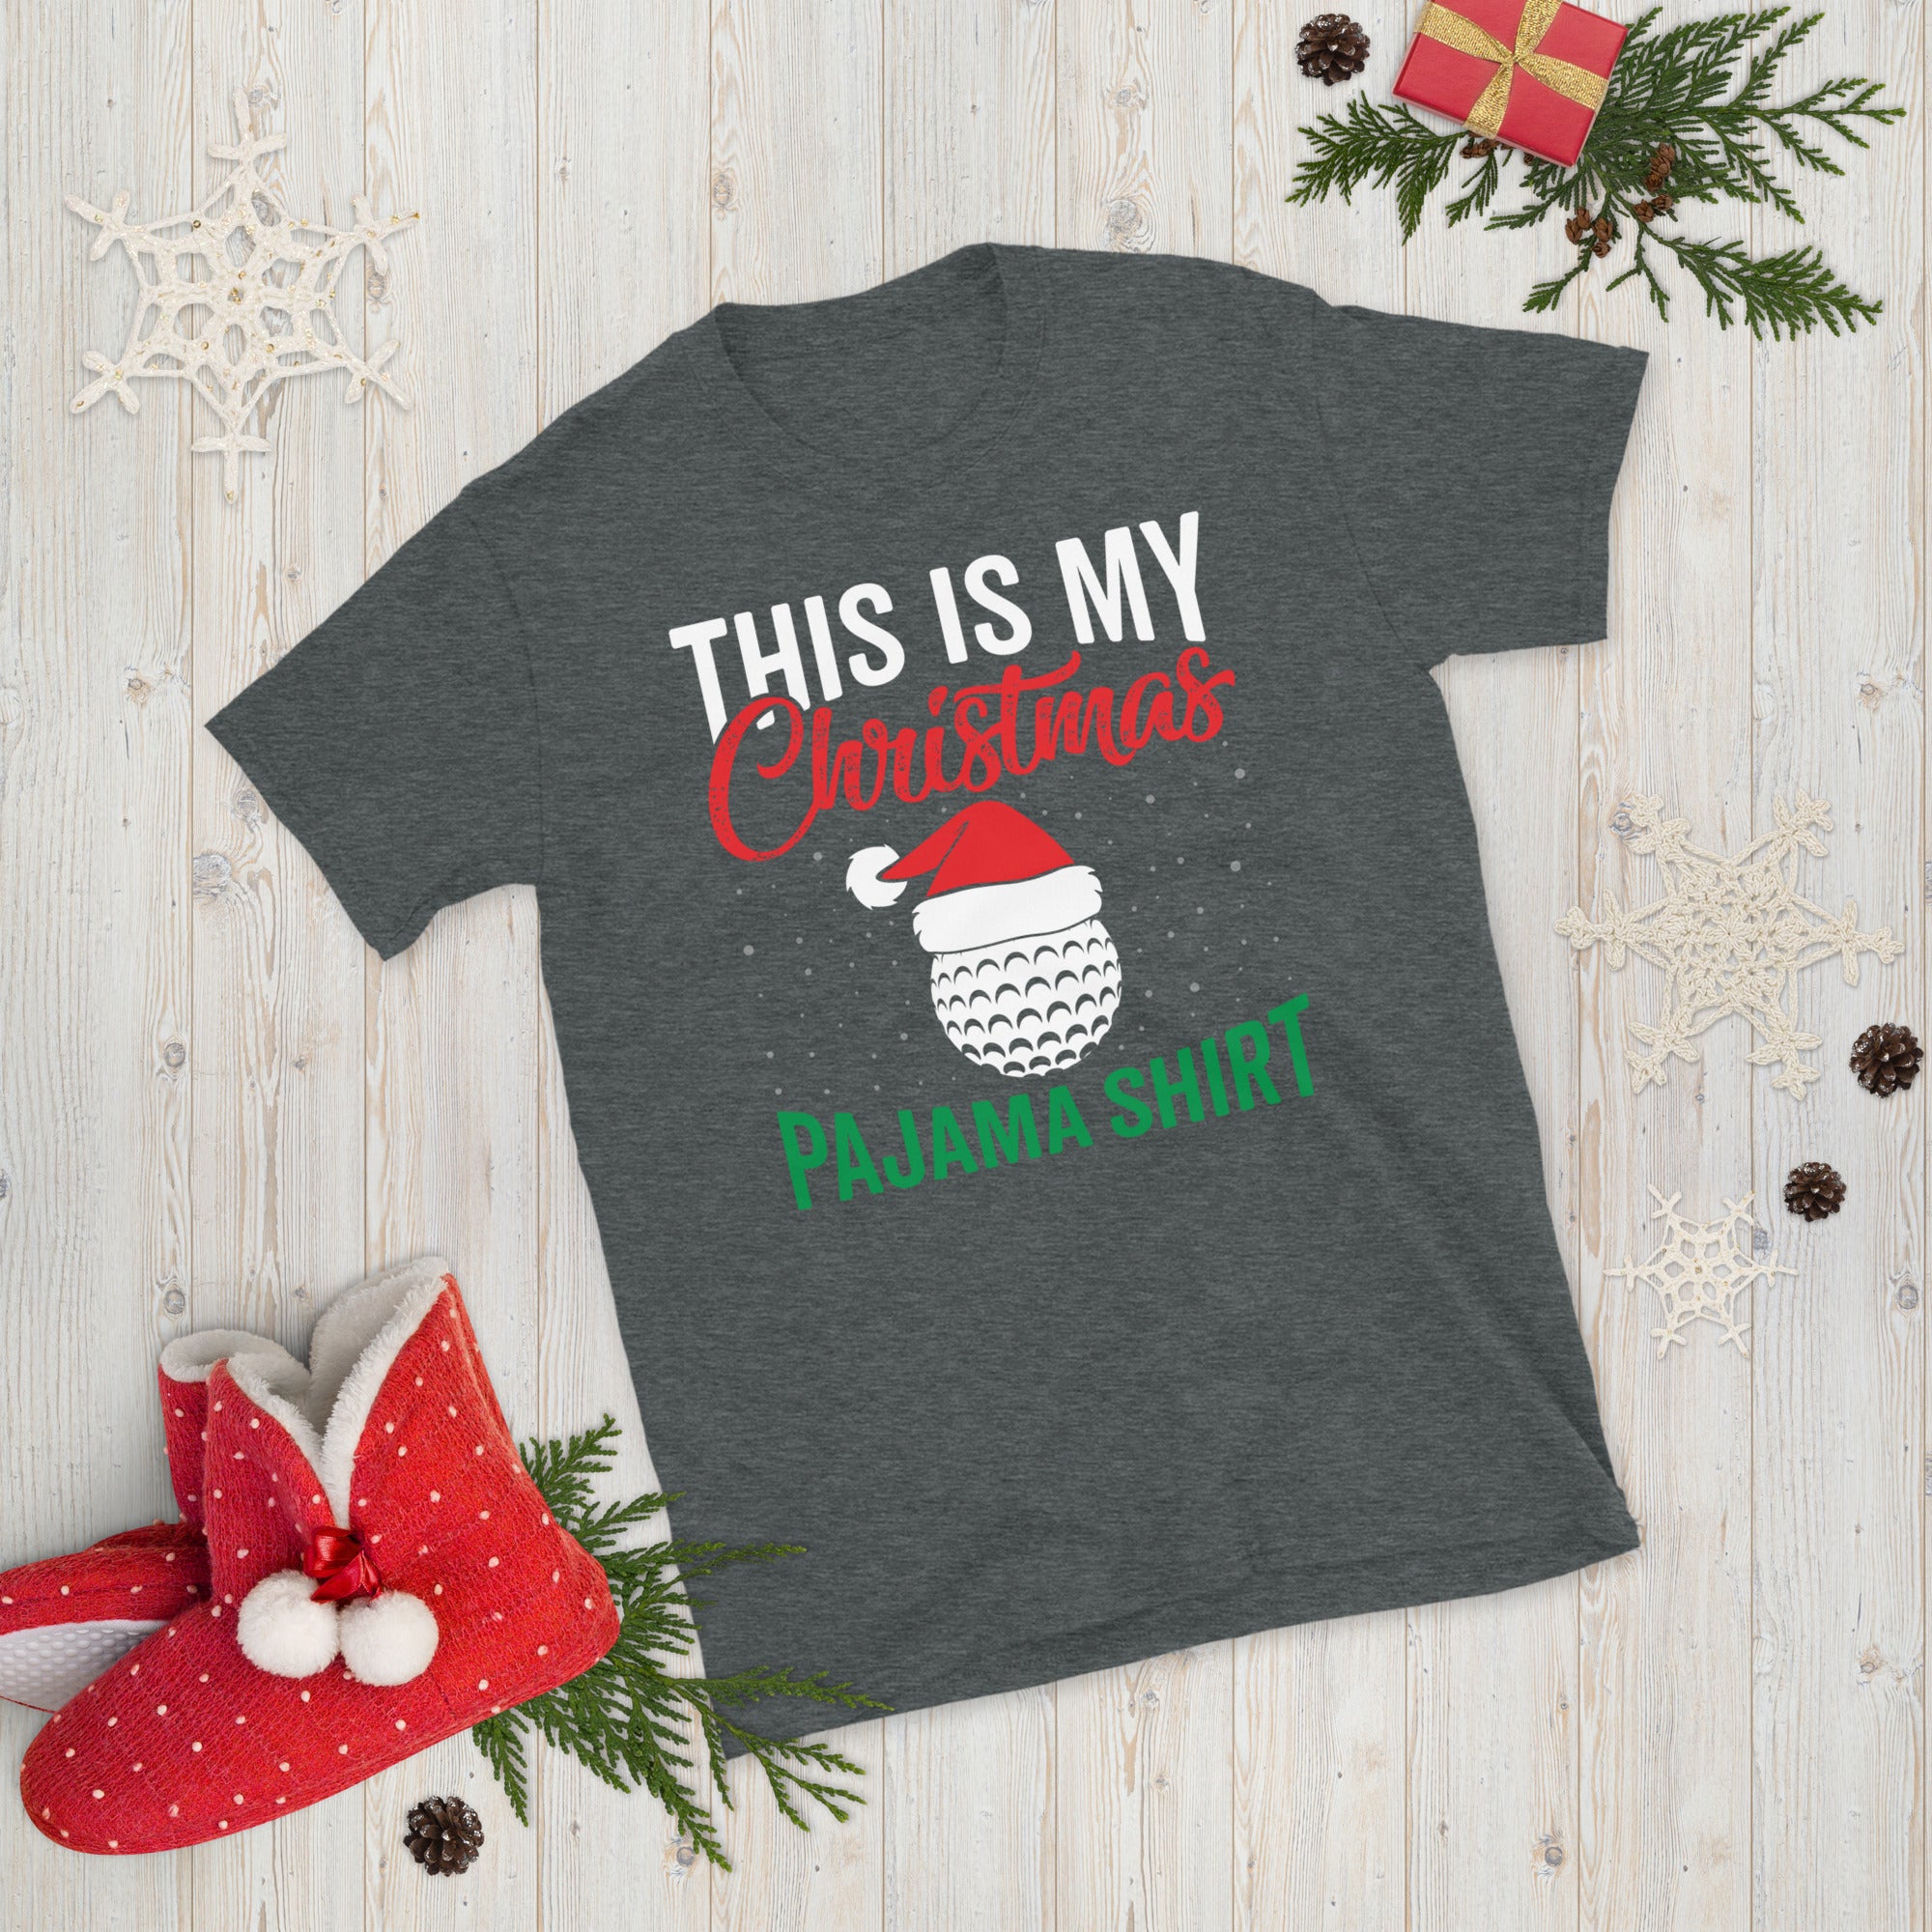 This Is My Christmas Pajama Shirt, Christmas Golf Shirt, Funny Golfing T Shirt, Golf Christmas Gift, Xmas Golf Tee, Golfer Christmas Shirt - Madeinsea©